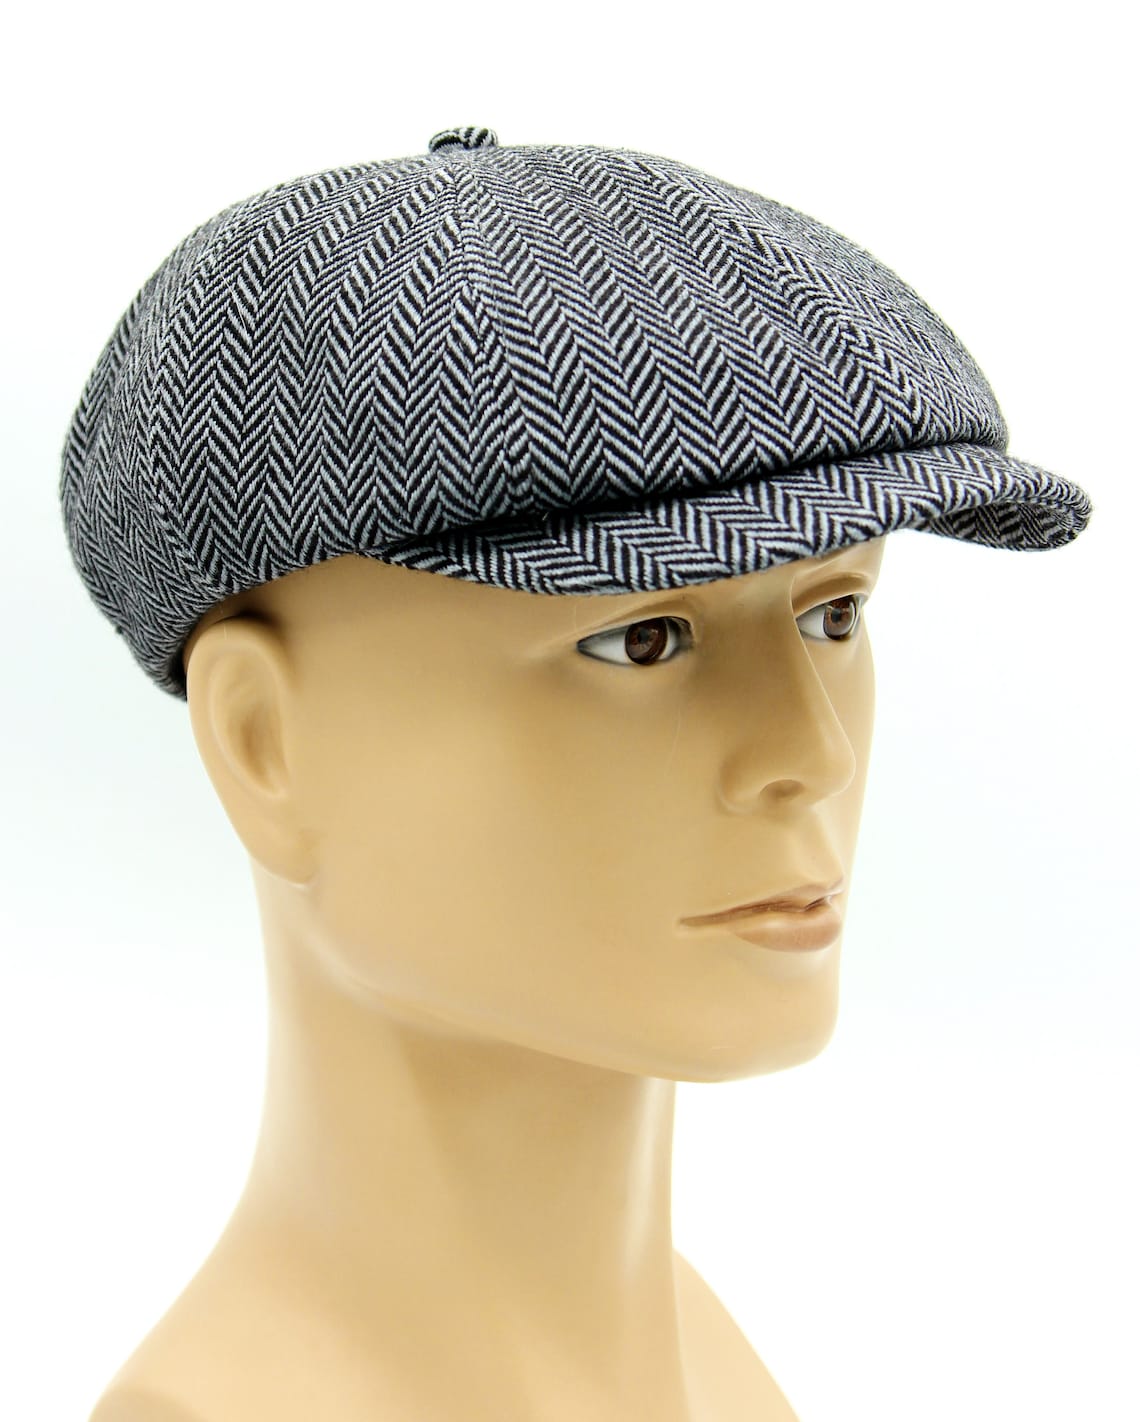 Baker boy hat newsboy cap newsboy cap man vintage hat man | Etsy